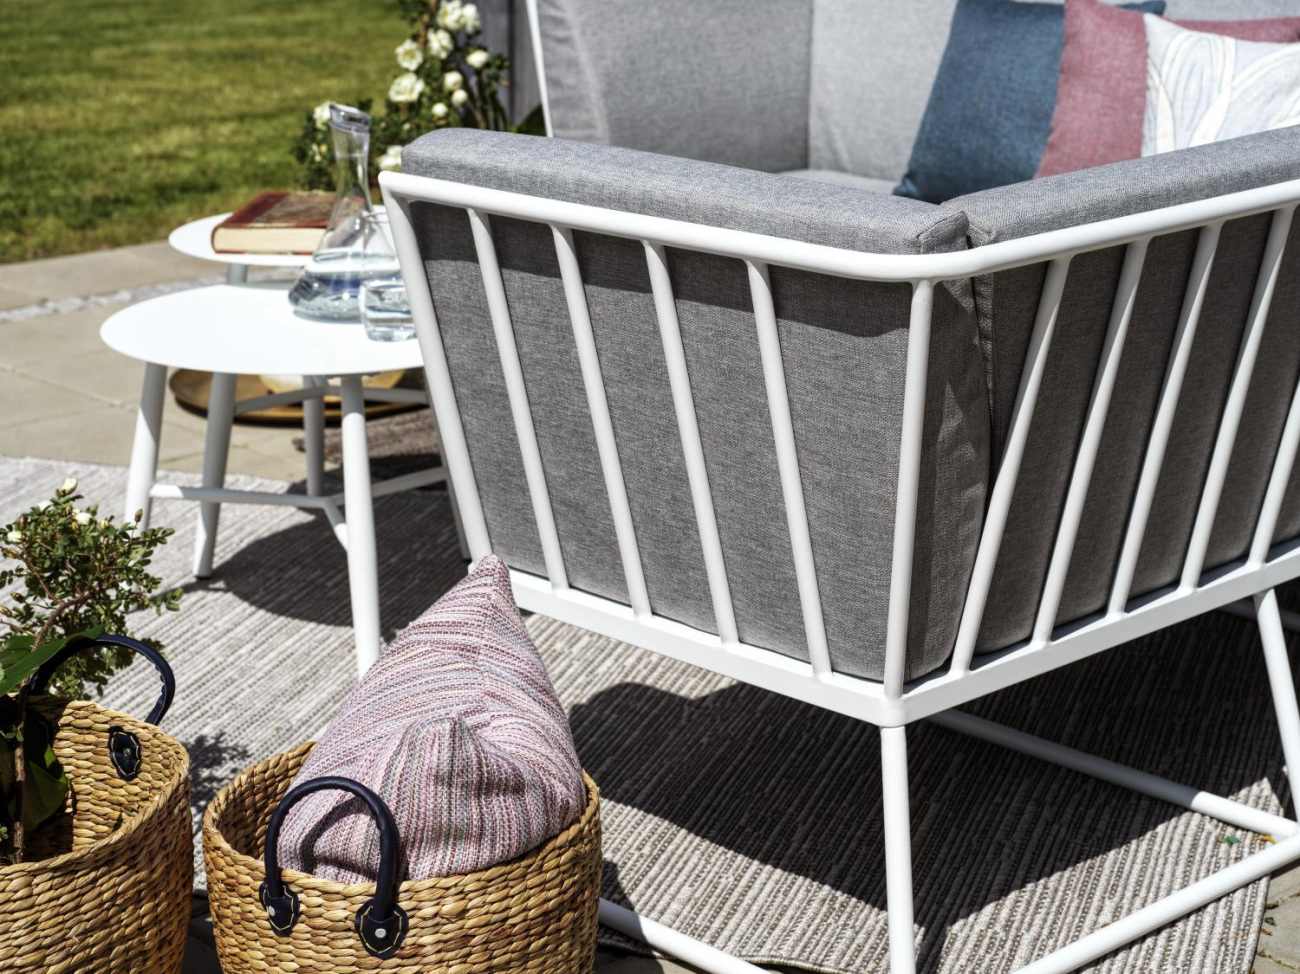 Das Gartensofa Vence überzeugt mit seinem modernen Design. Gefertigt wurde er aus Stoff, welcher einen grauen Farbton besitzt. Das Gestell ist aus Metall und hat eine weiße Farbe. Die Sitzhöhe des Sofas beträgt 43 cm.